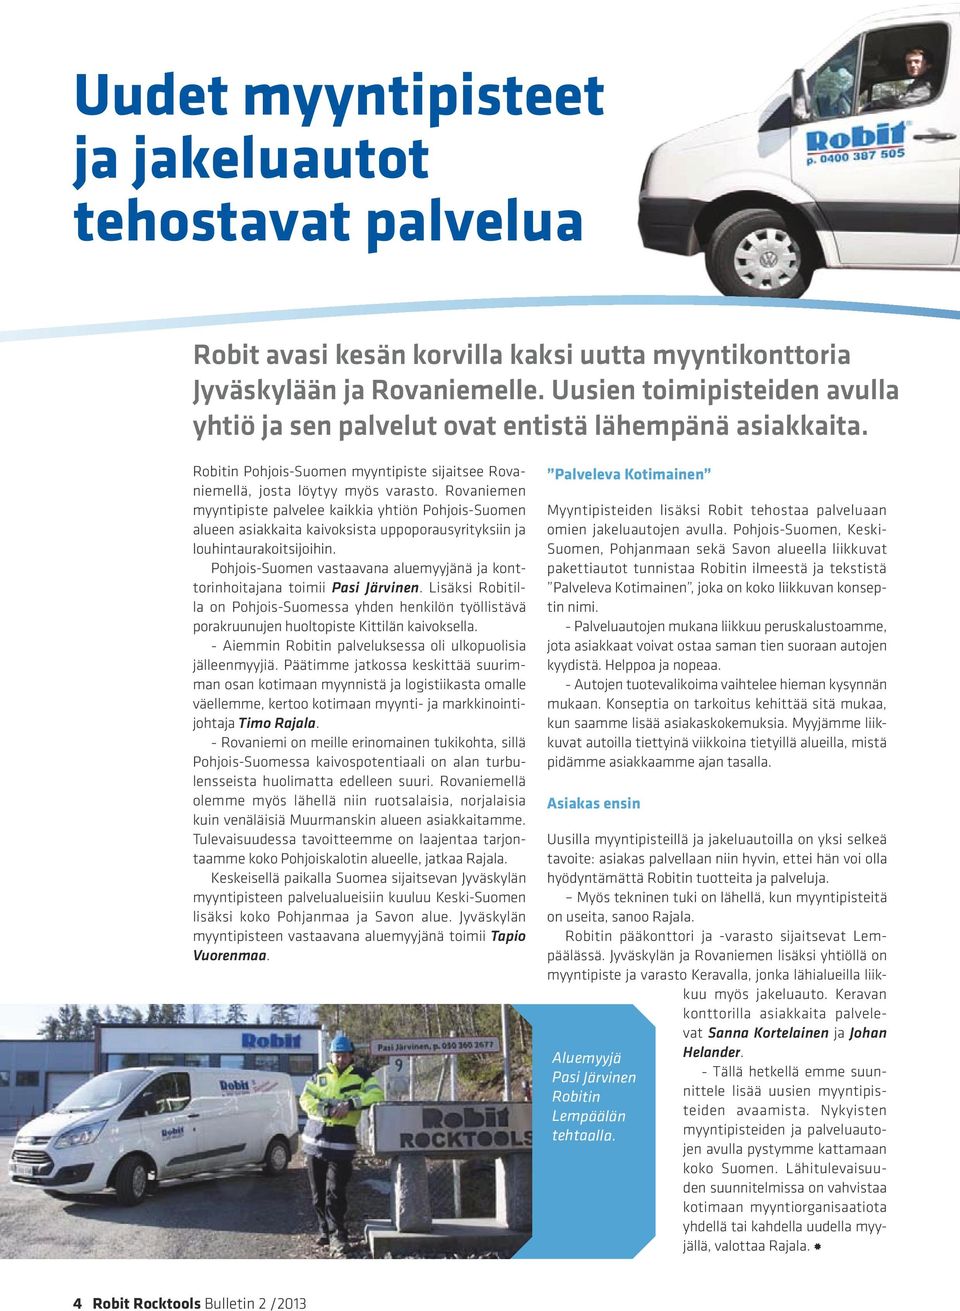 Rovaniemen myyntipiste palvelee kaikkia yhtiön Pohjois-Suomen alueen asiakkaita kaivoksista uppoporausyrityksiin ja louhintaurakoitsijoihin.